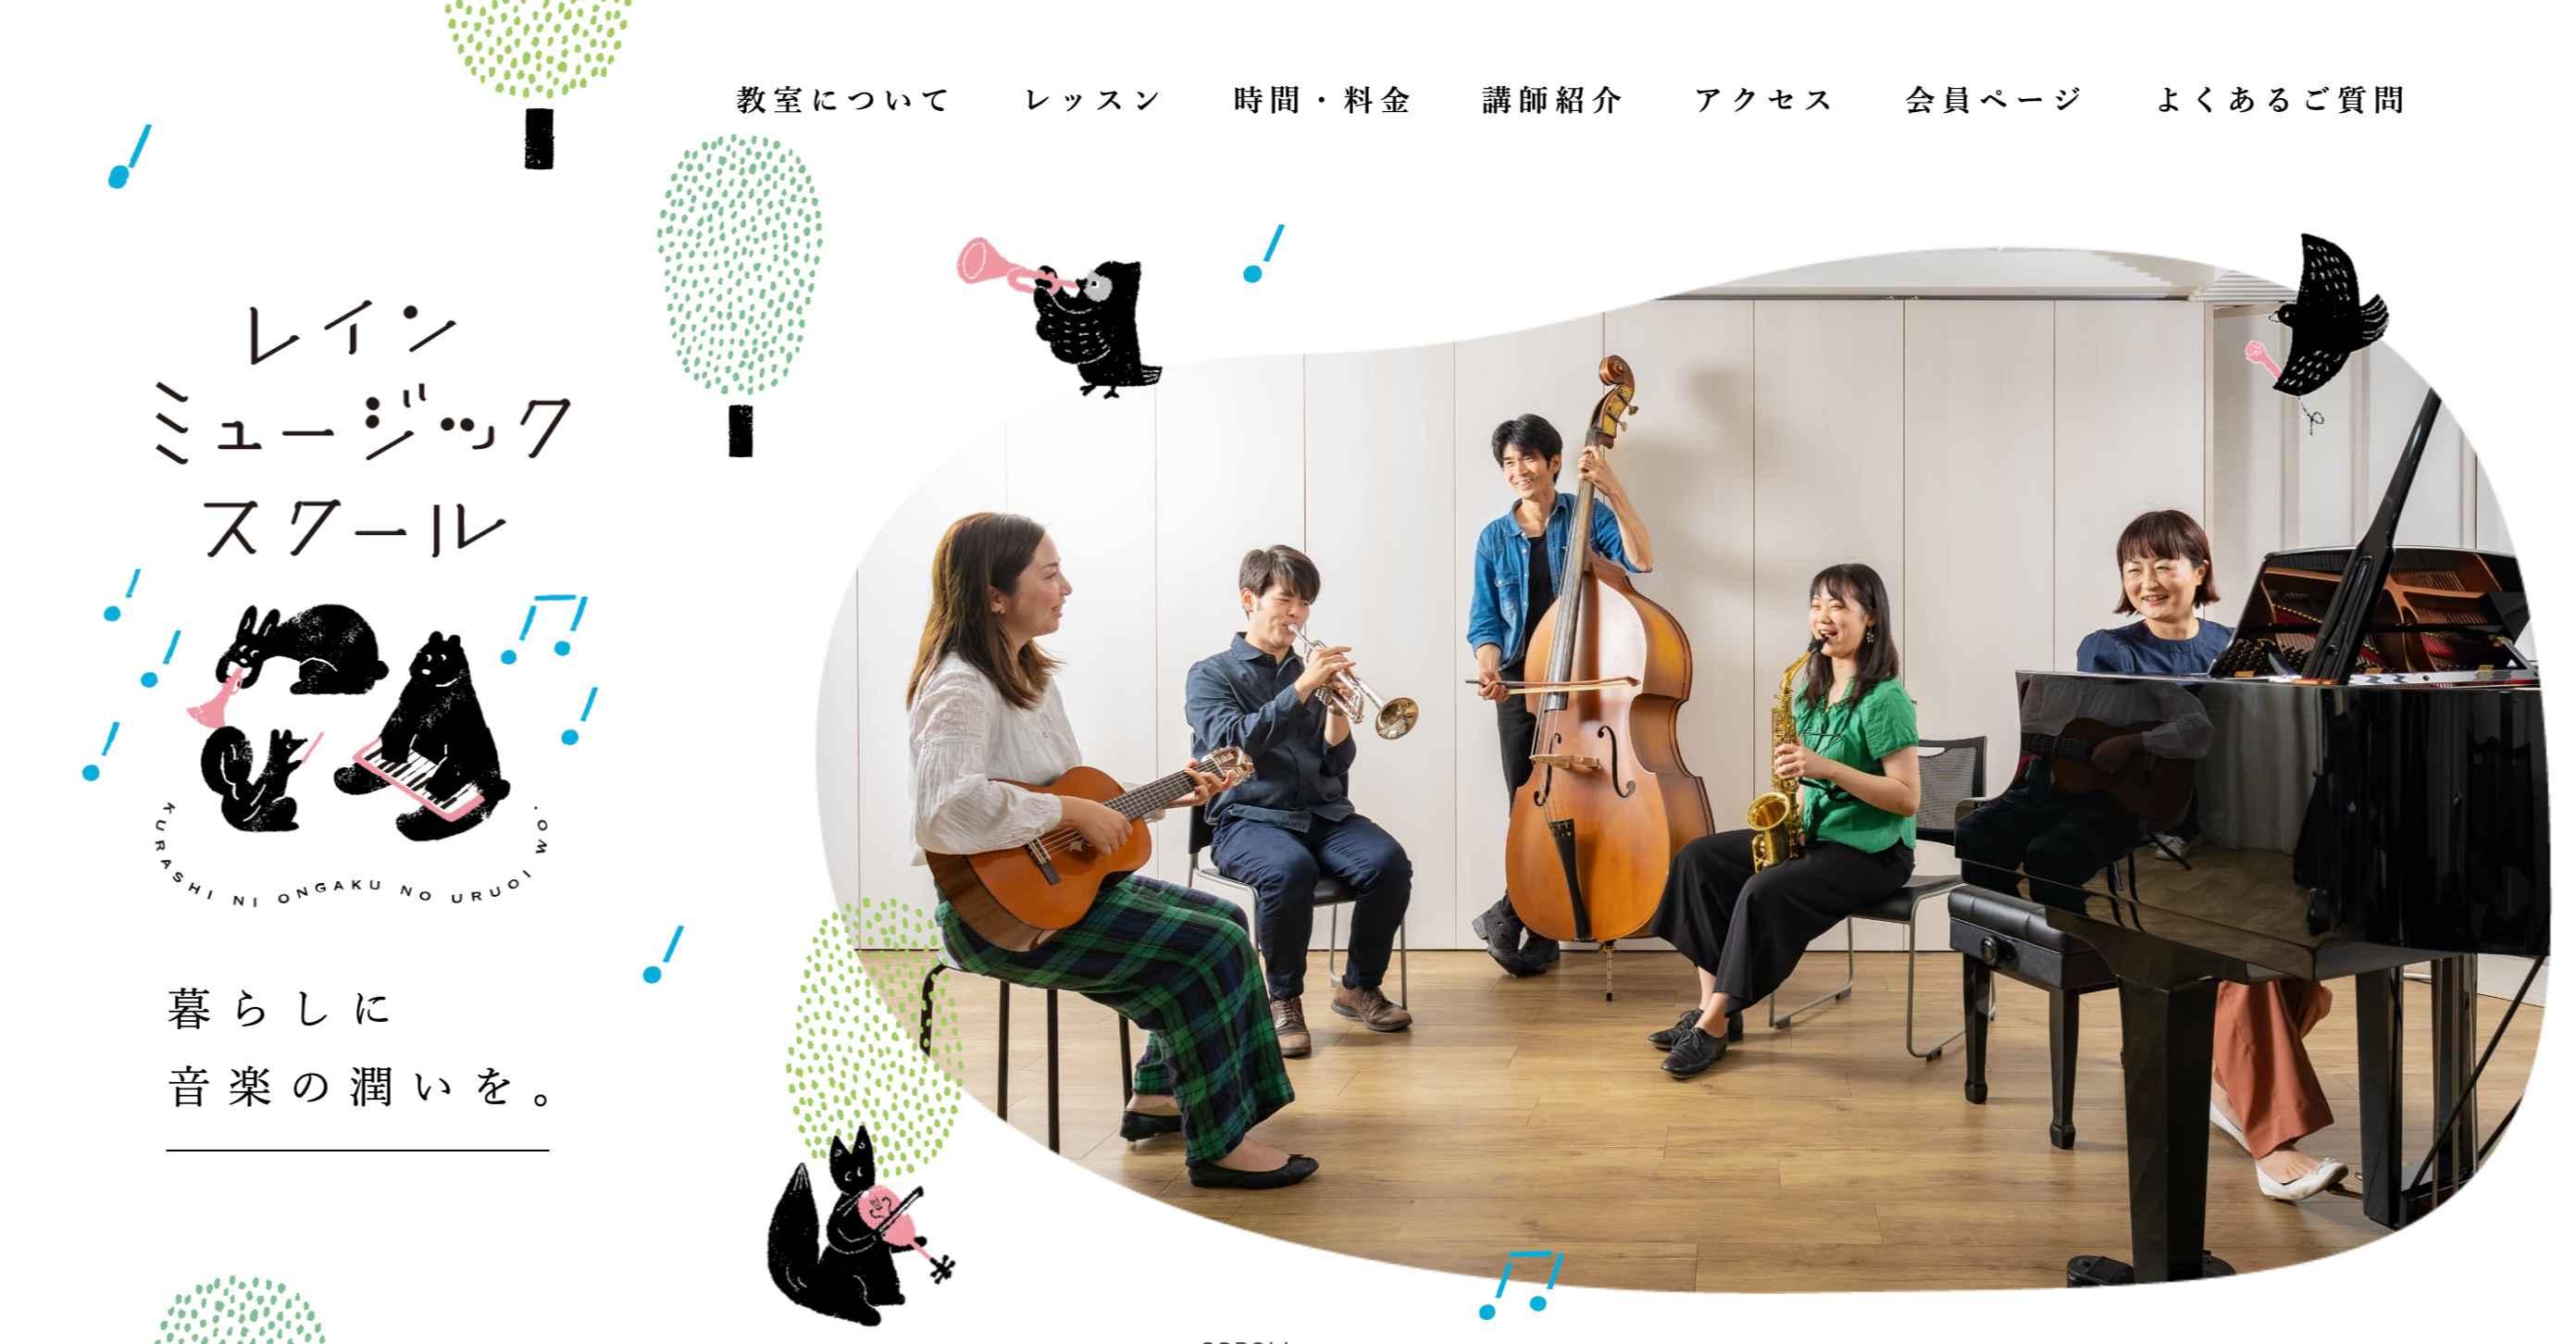 レインミュージックスクール 豊島区池袋教室